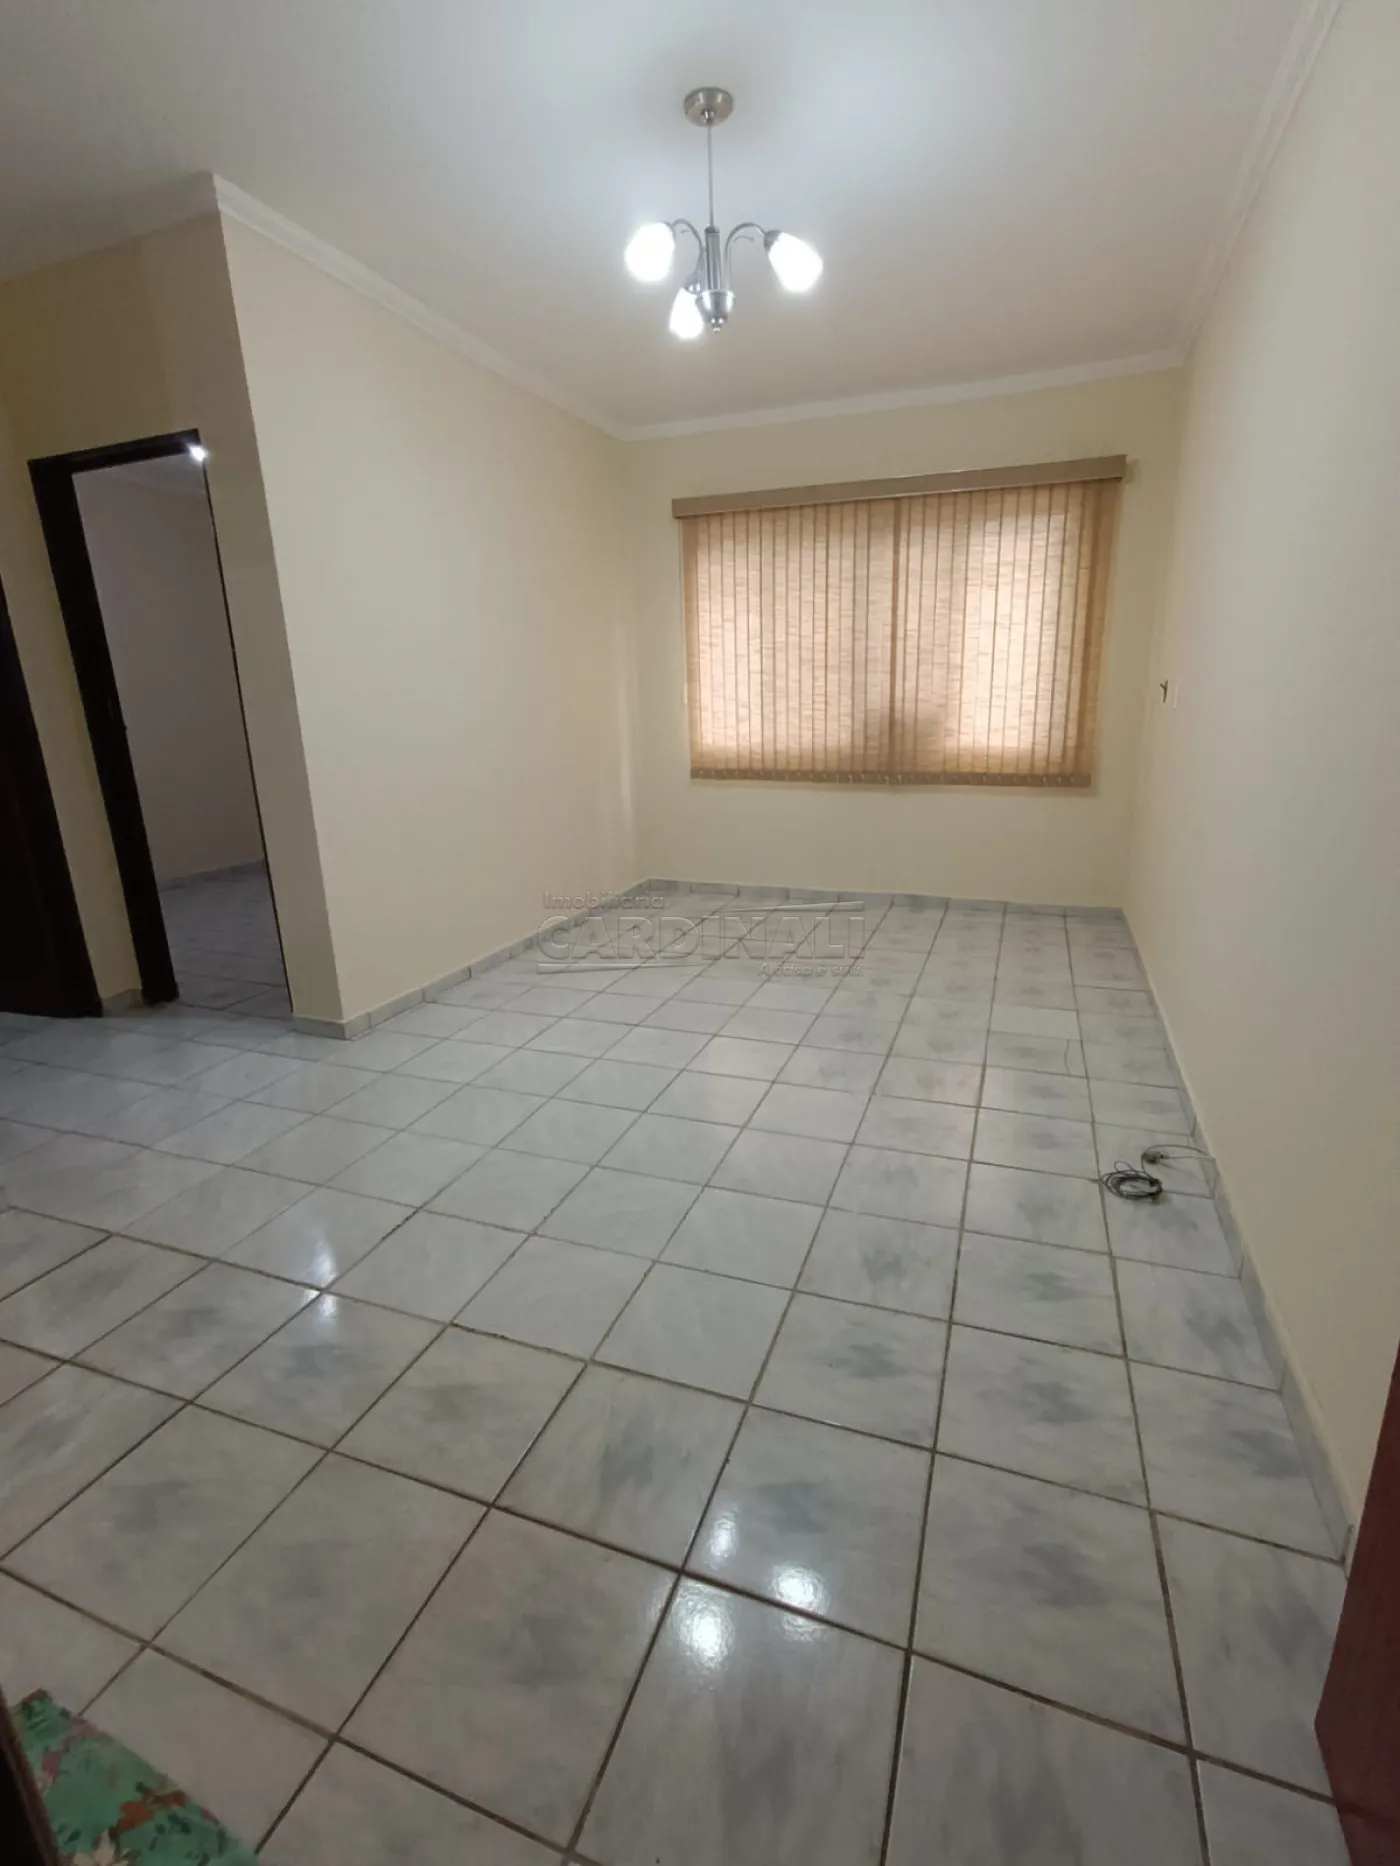 Alugar Apartamento / Padrão em São Carlos R$ 850,00 - Foto 2